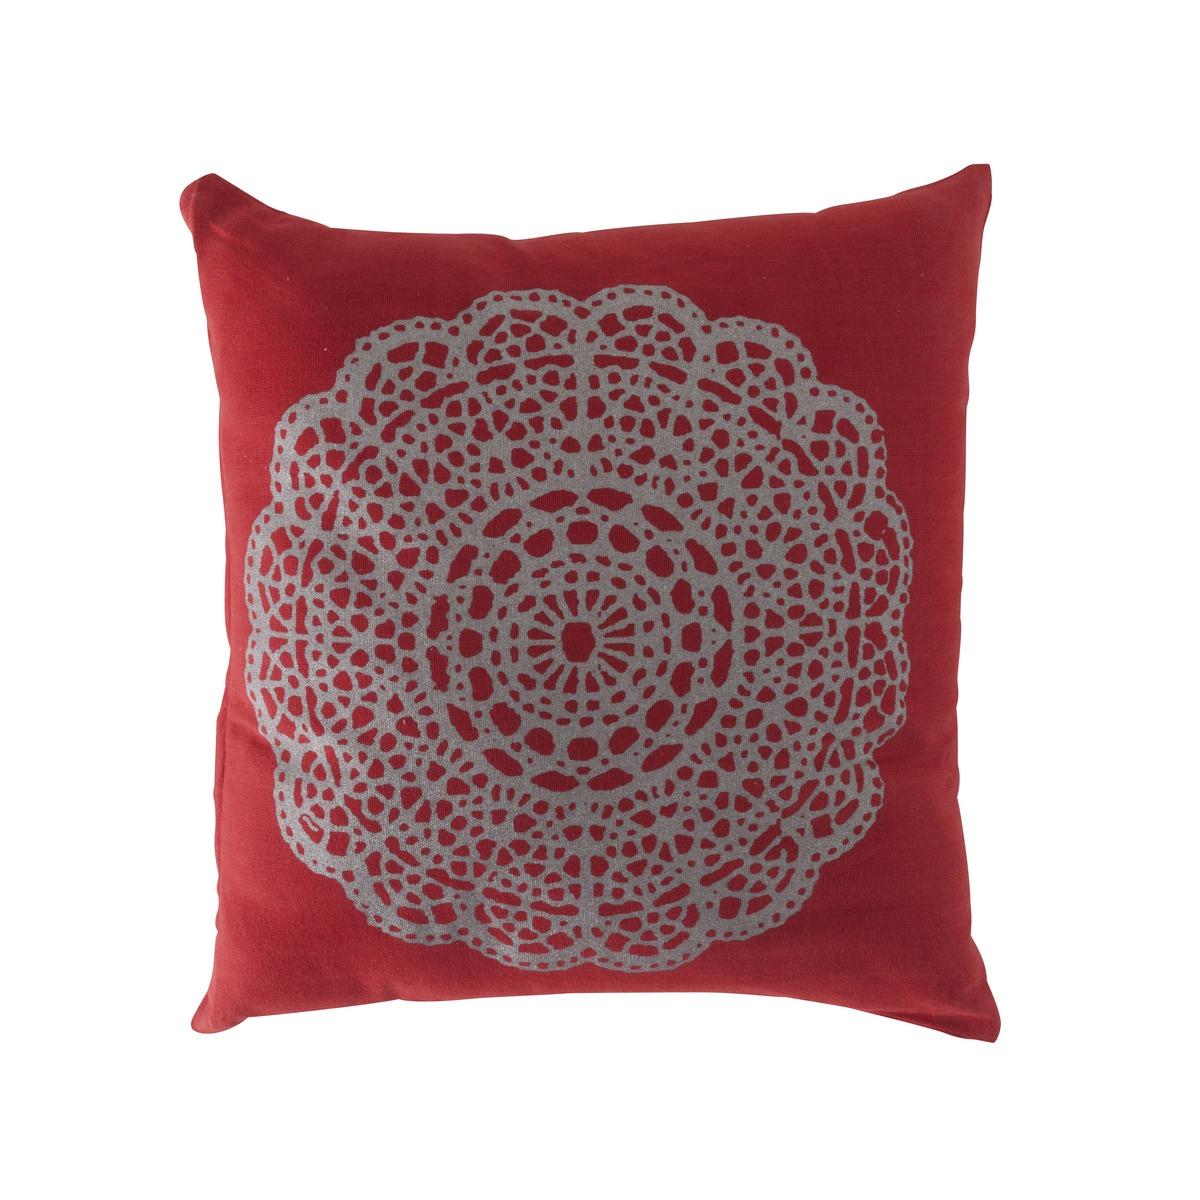 Coussin motif dentelle - 40 x 40 cm - Rouge, Jaune or